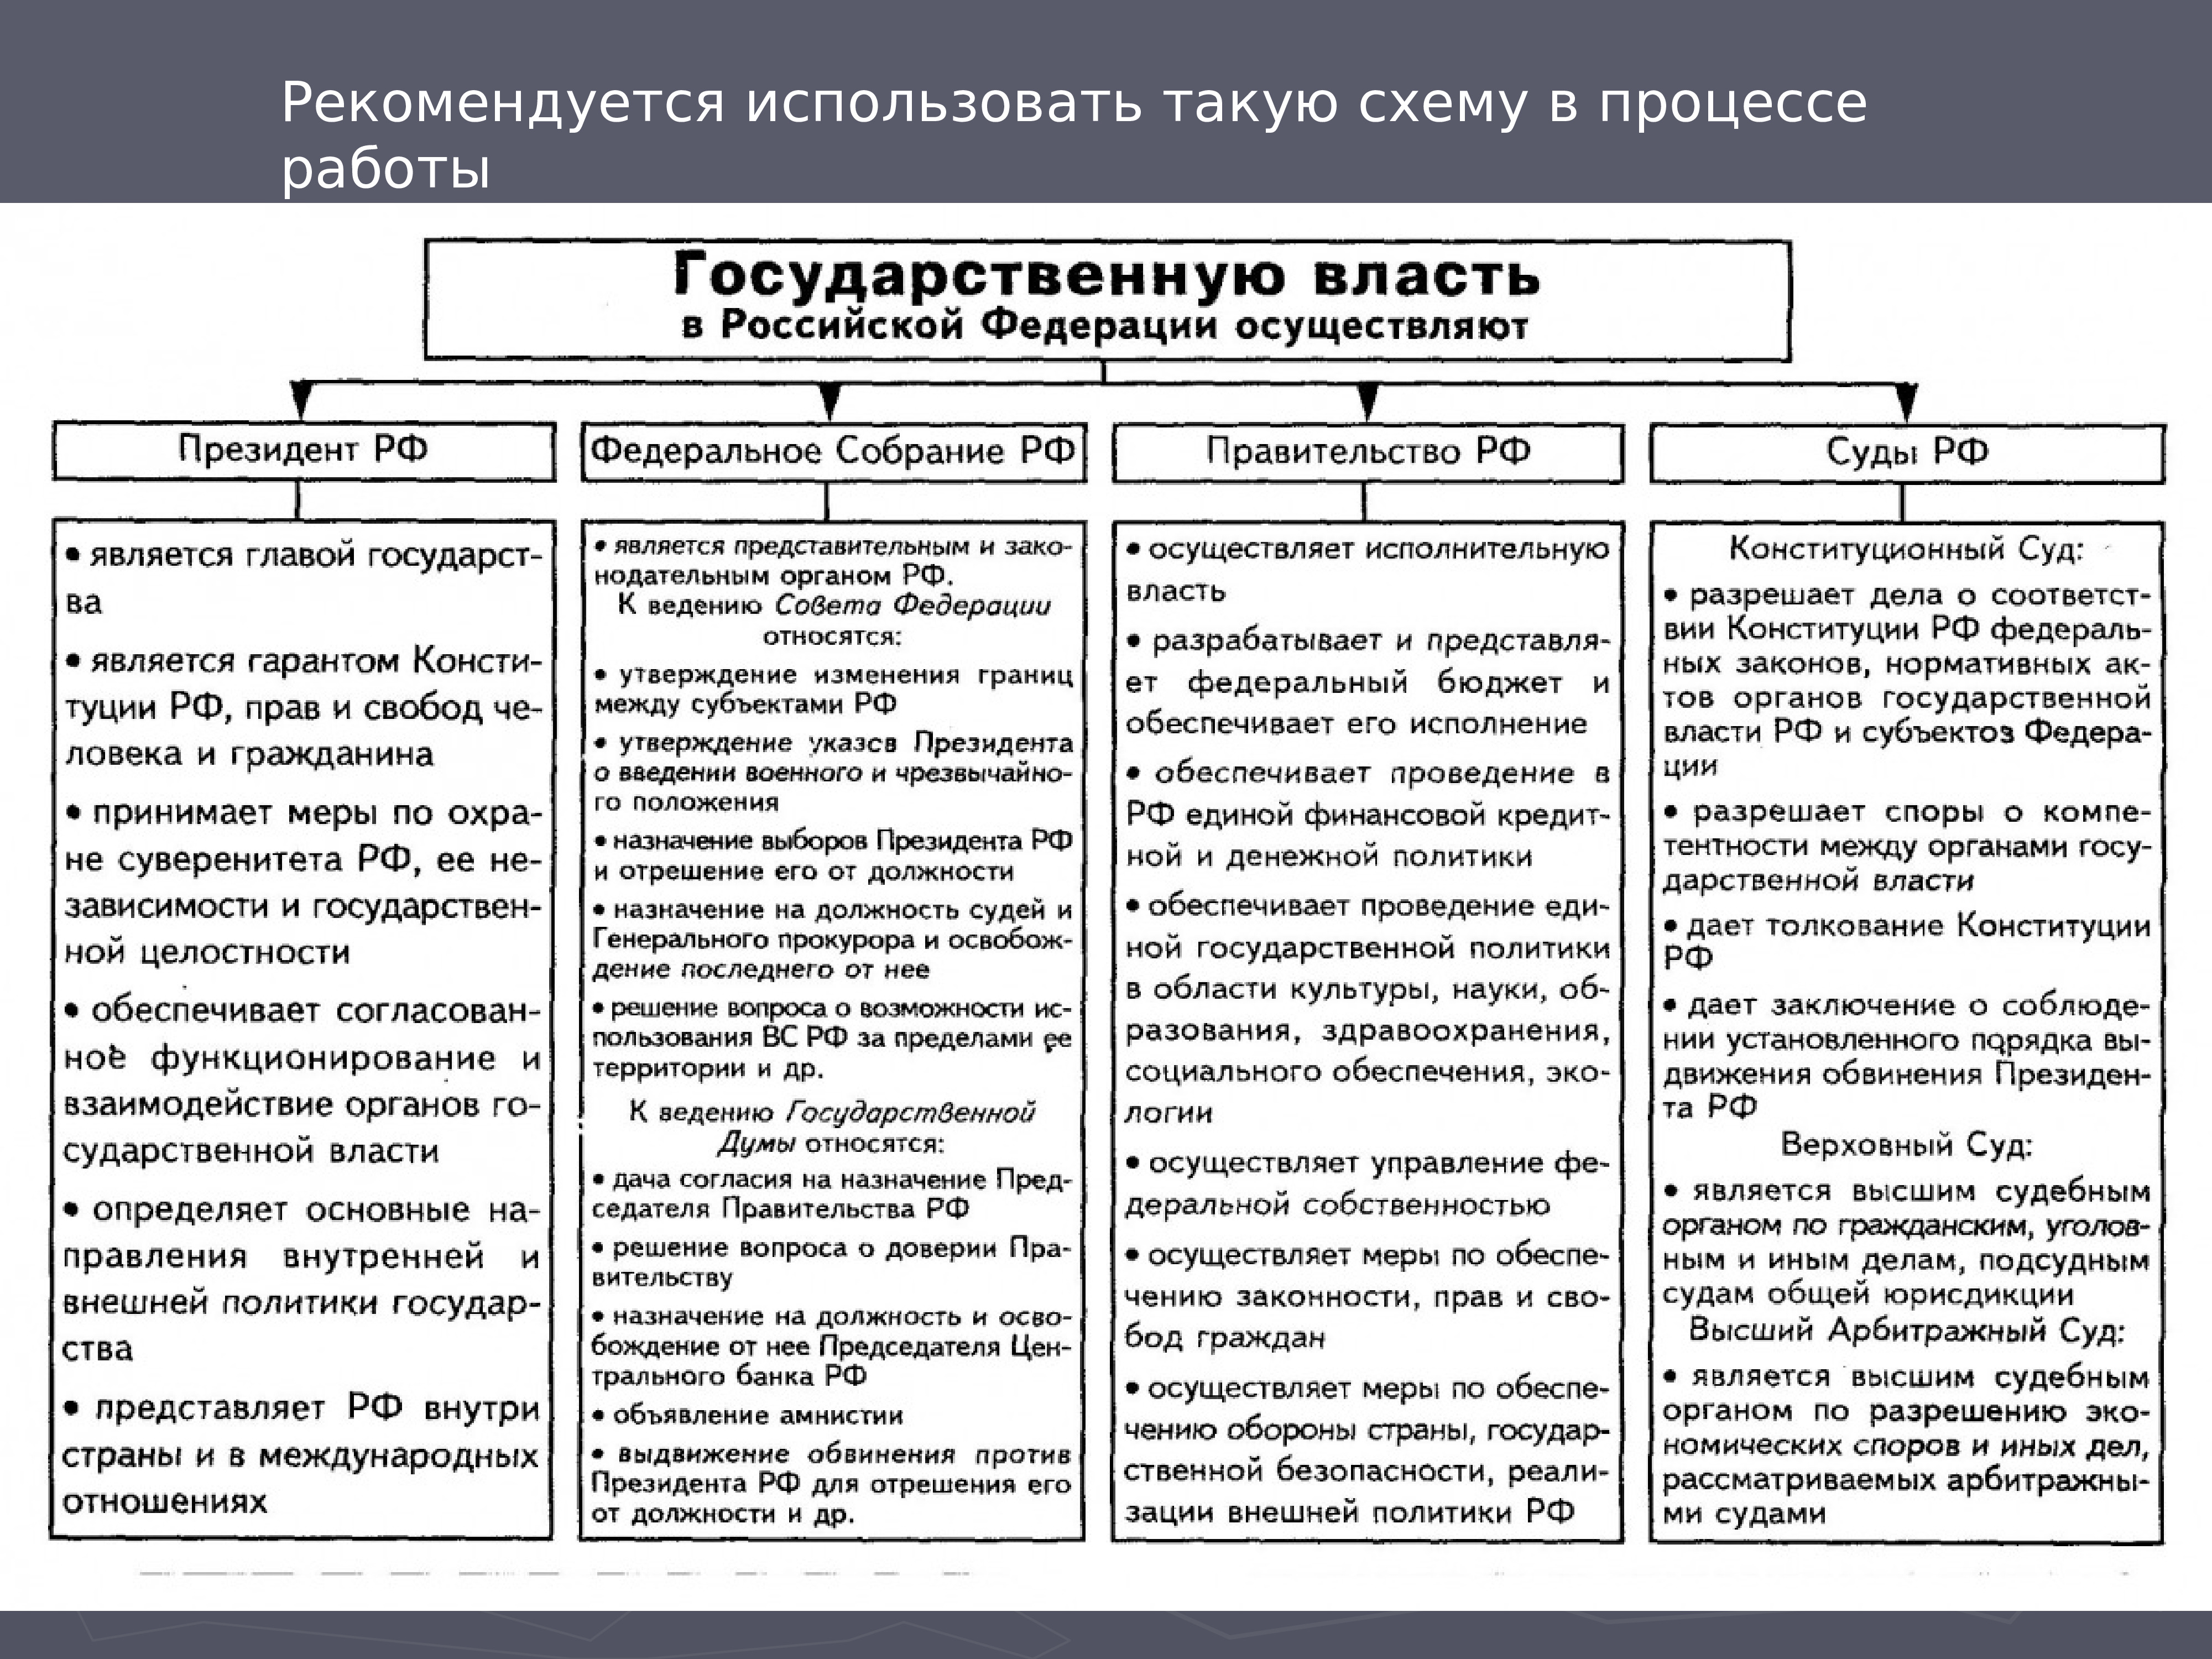 Функции государственной власти в россии